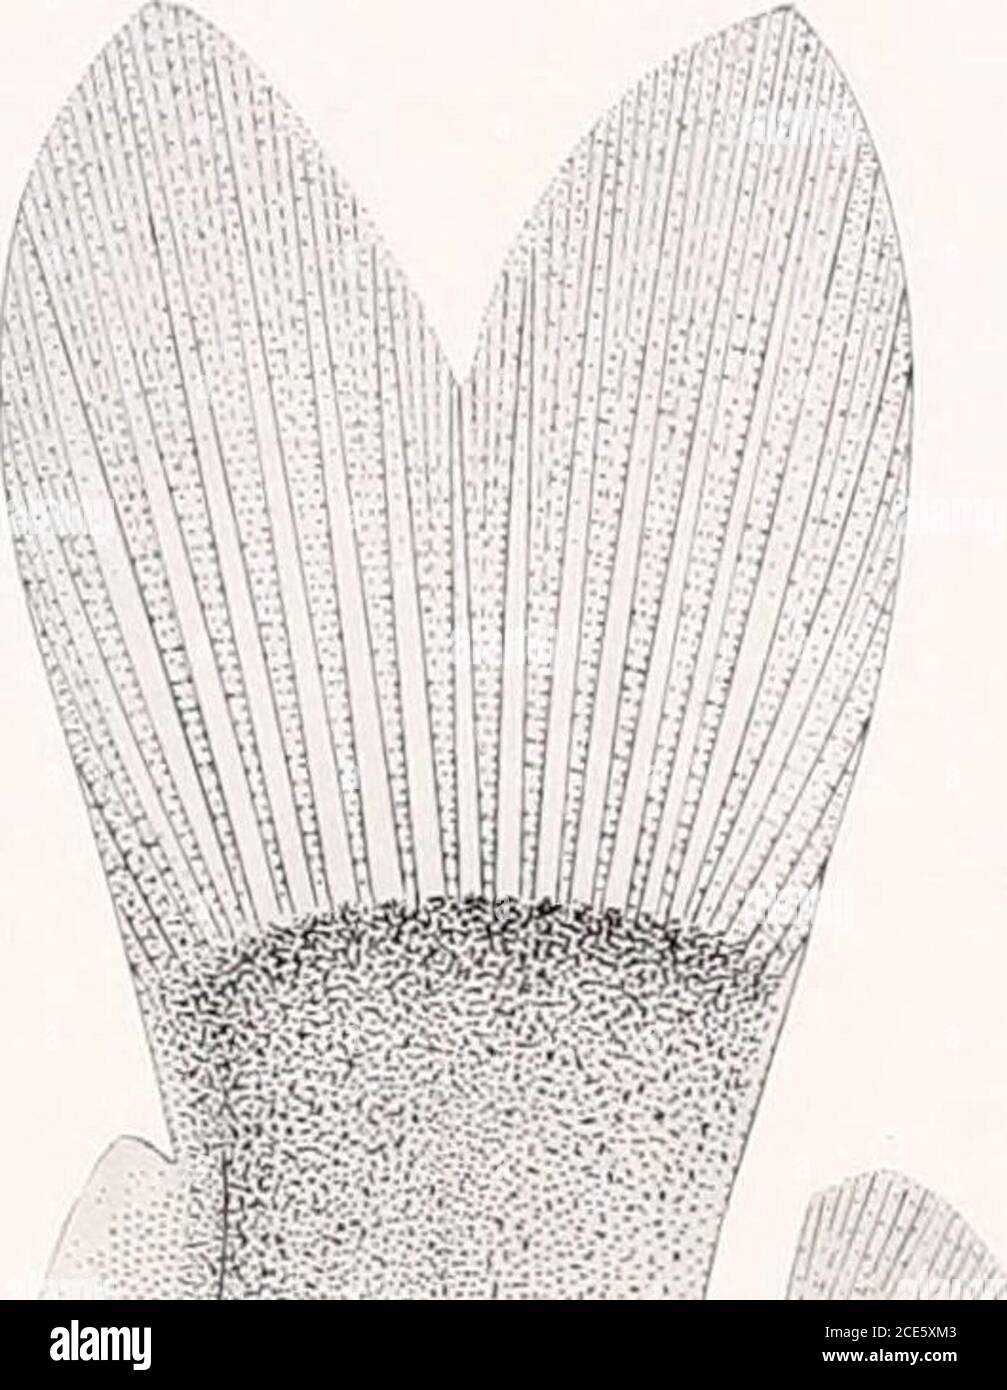 . Los peces de agua dulce de la Guayana Británica, incluyendo un estudio de la agrupación ecológica de especies y la relación de la fauna de la meseta con la de las tierras bajas. Brachyglanis phalacra Eigenmanx. (Tipo.) 2.5 mm. a dorsal. No 1071. 2. Microglanis pcecilus Eigex- maxx. (Tipo.) 37 mm. No 1676. X w E-&lt; o in ow s ps &lt; ps. (yo Foto de stock